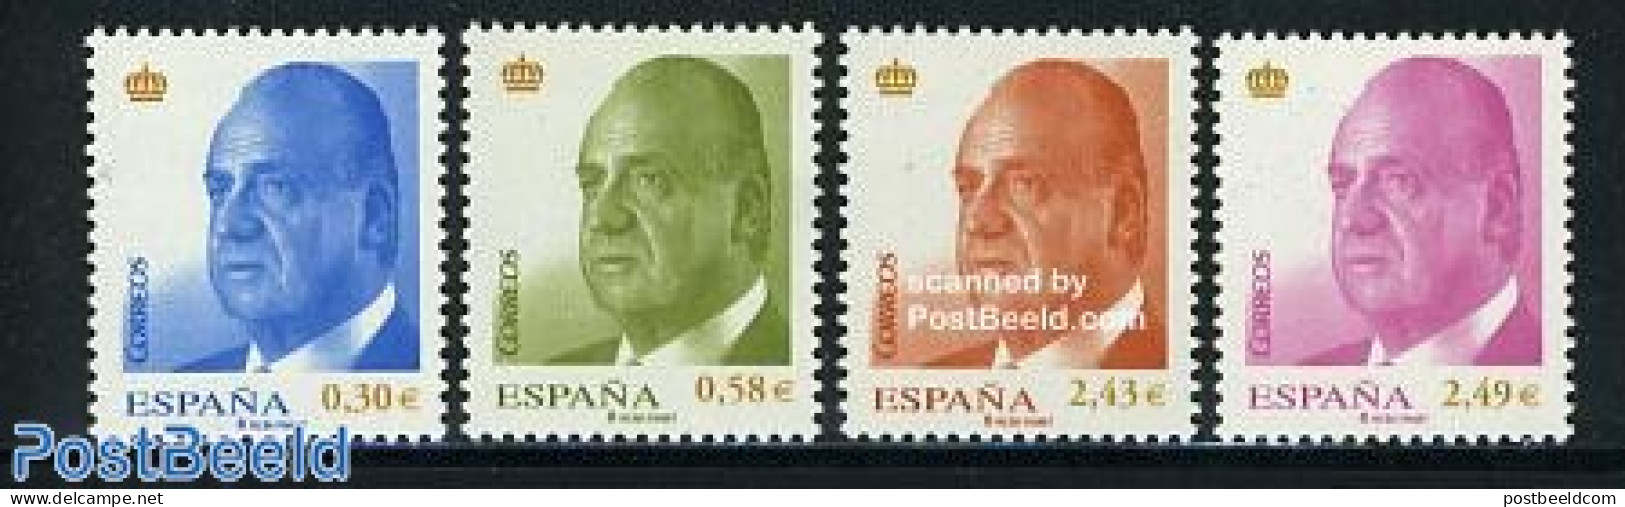 Spain 2007 Definitives, King 4v, Mint NH - Ongebruikt